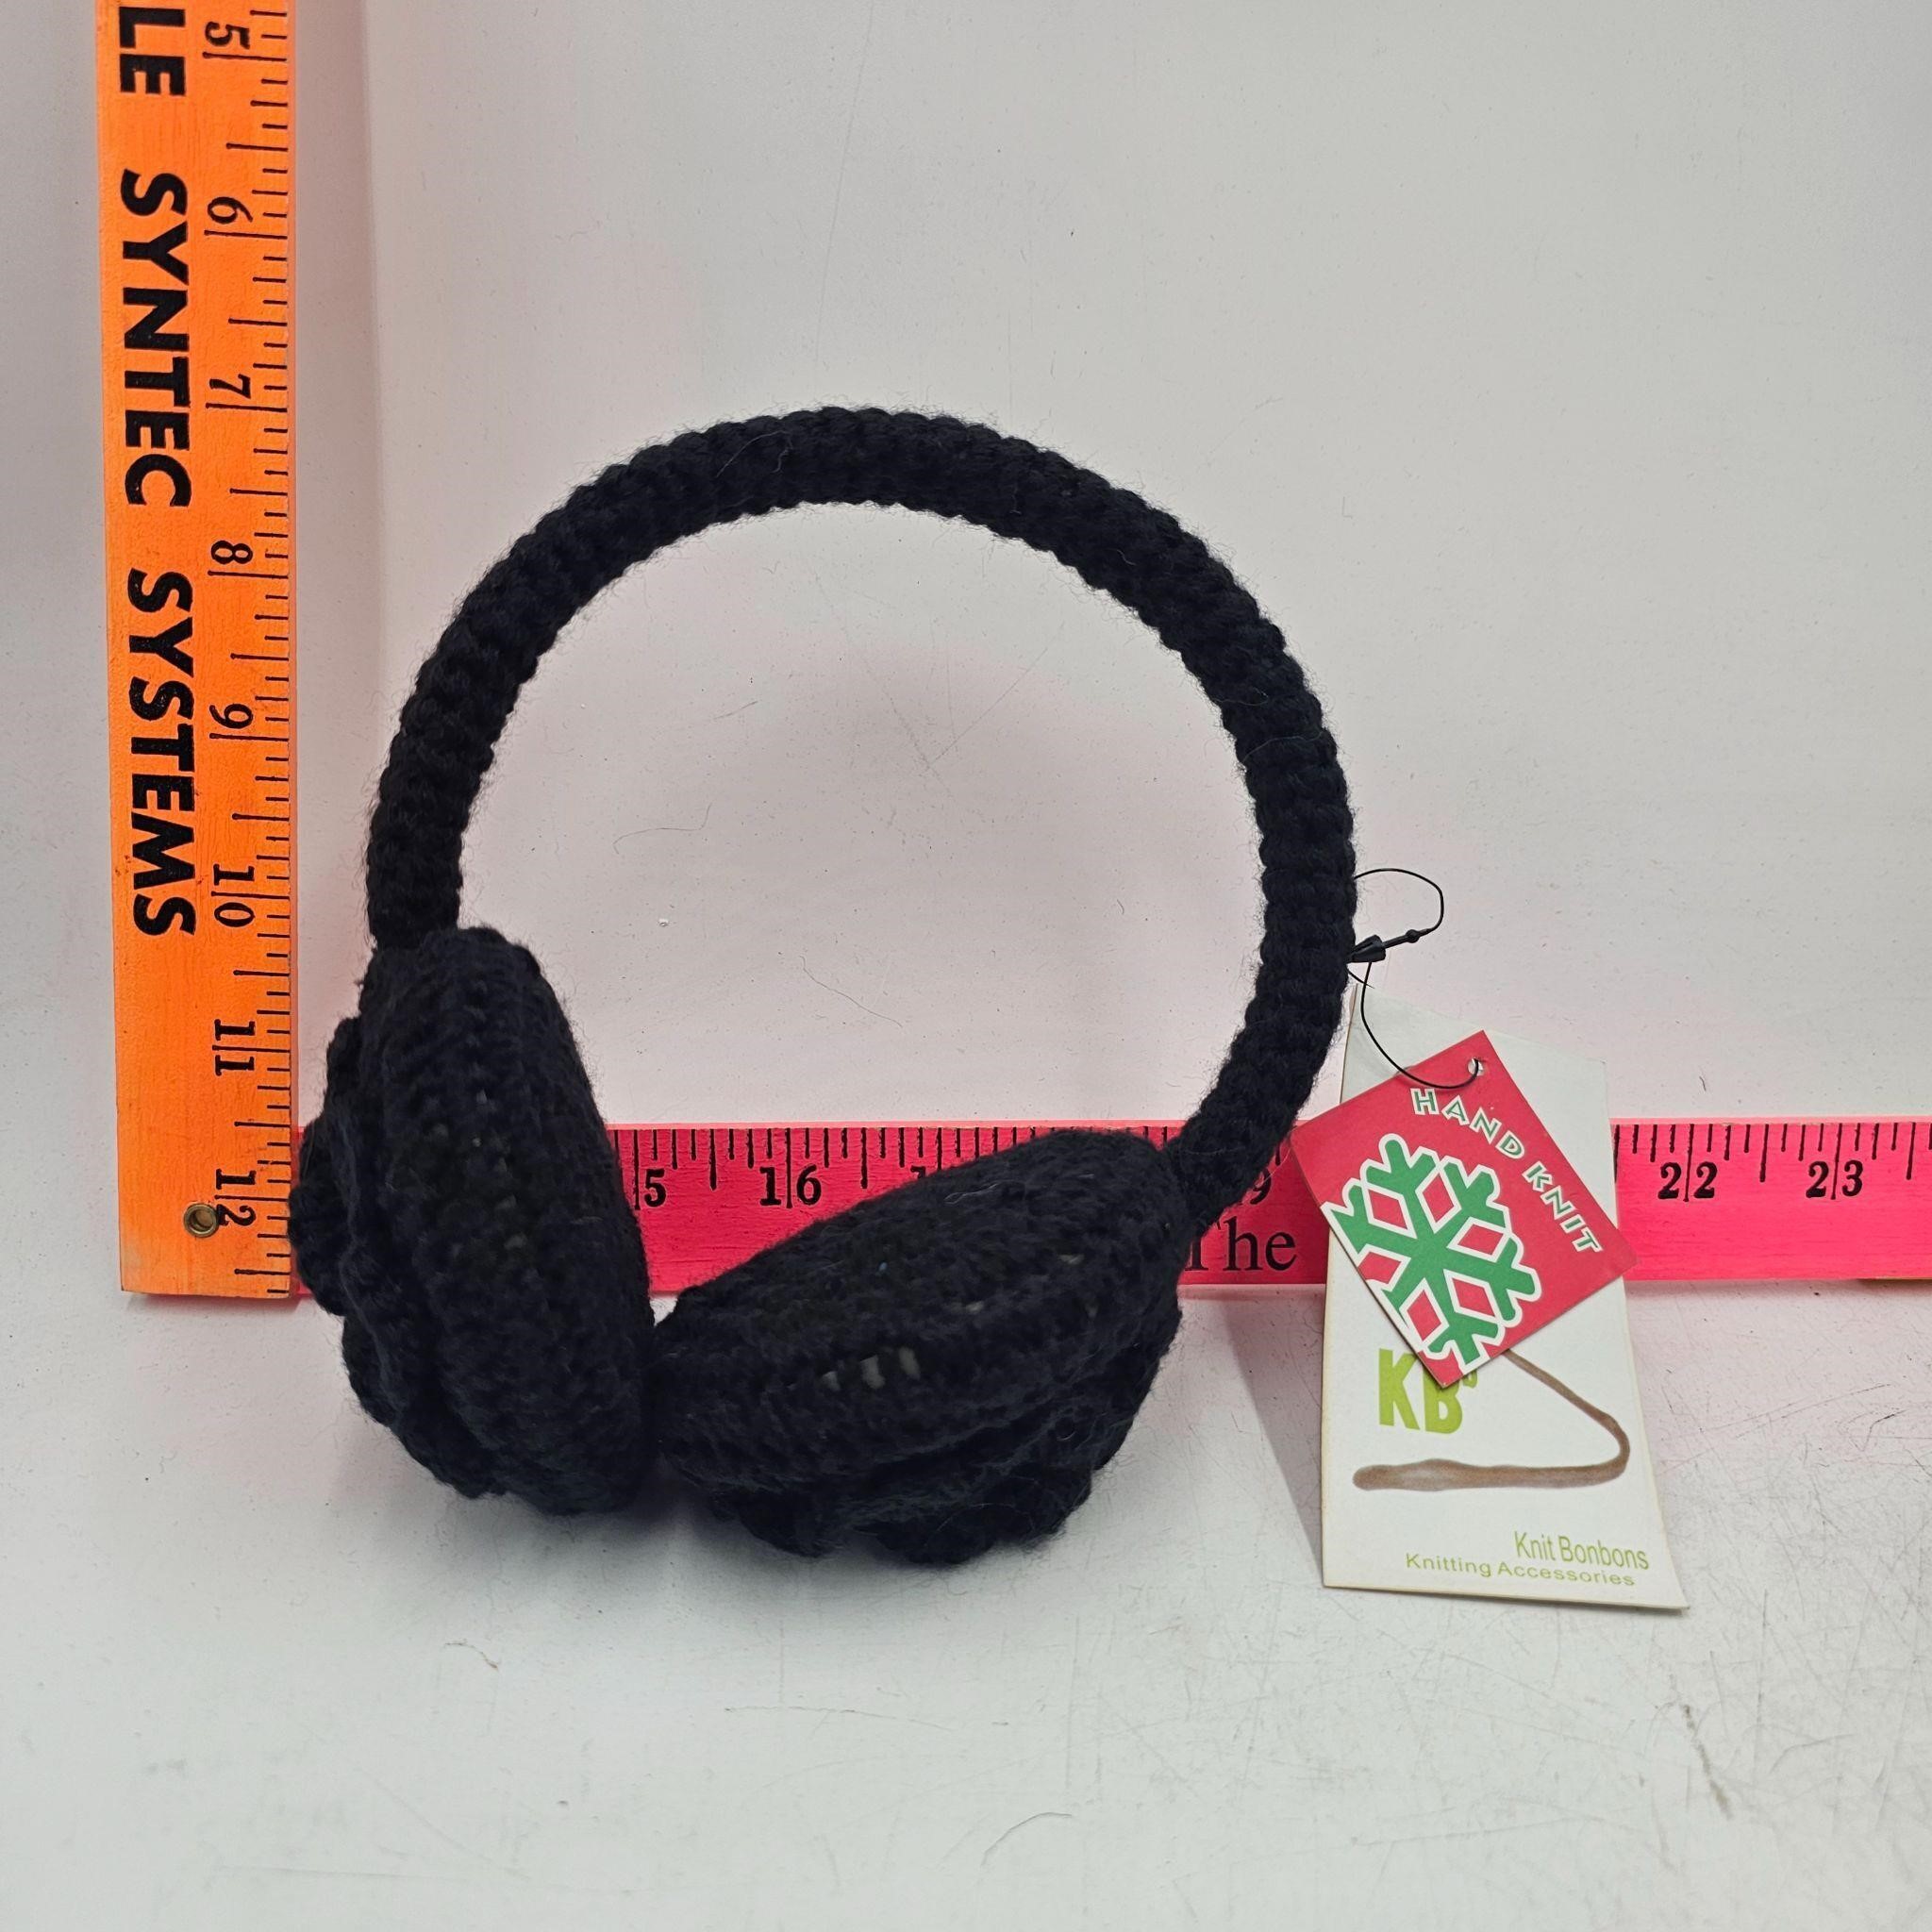 KB Hand Knit Ear Muffs, New